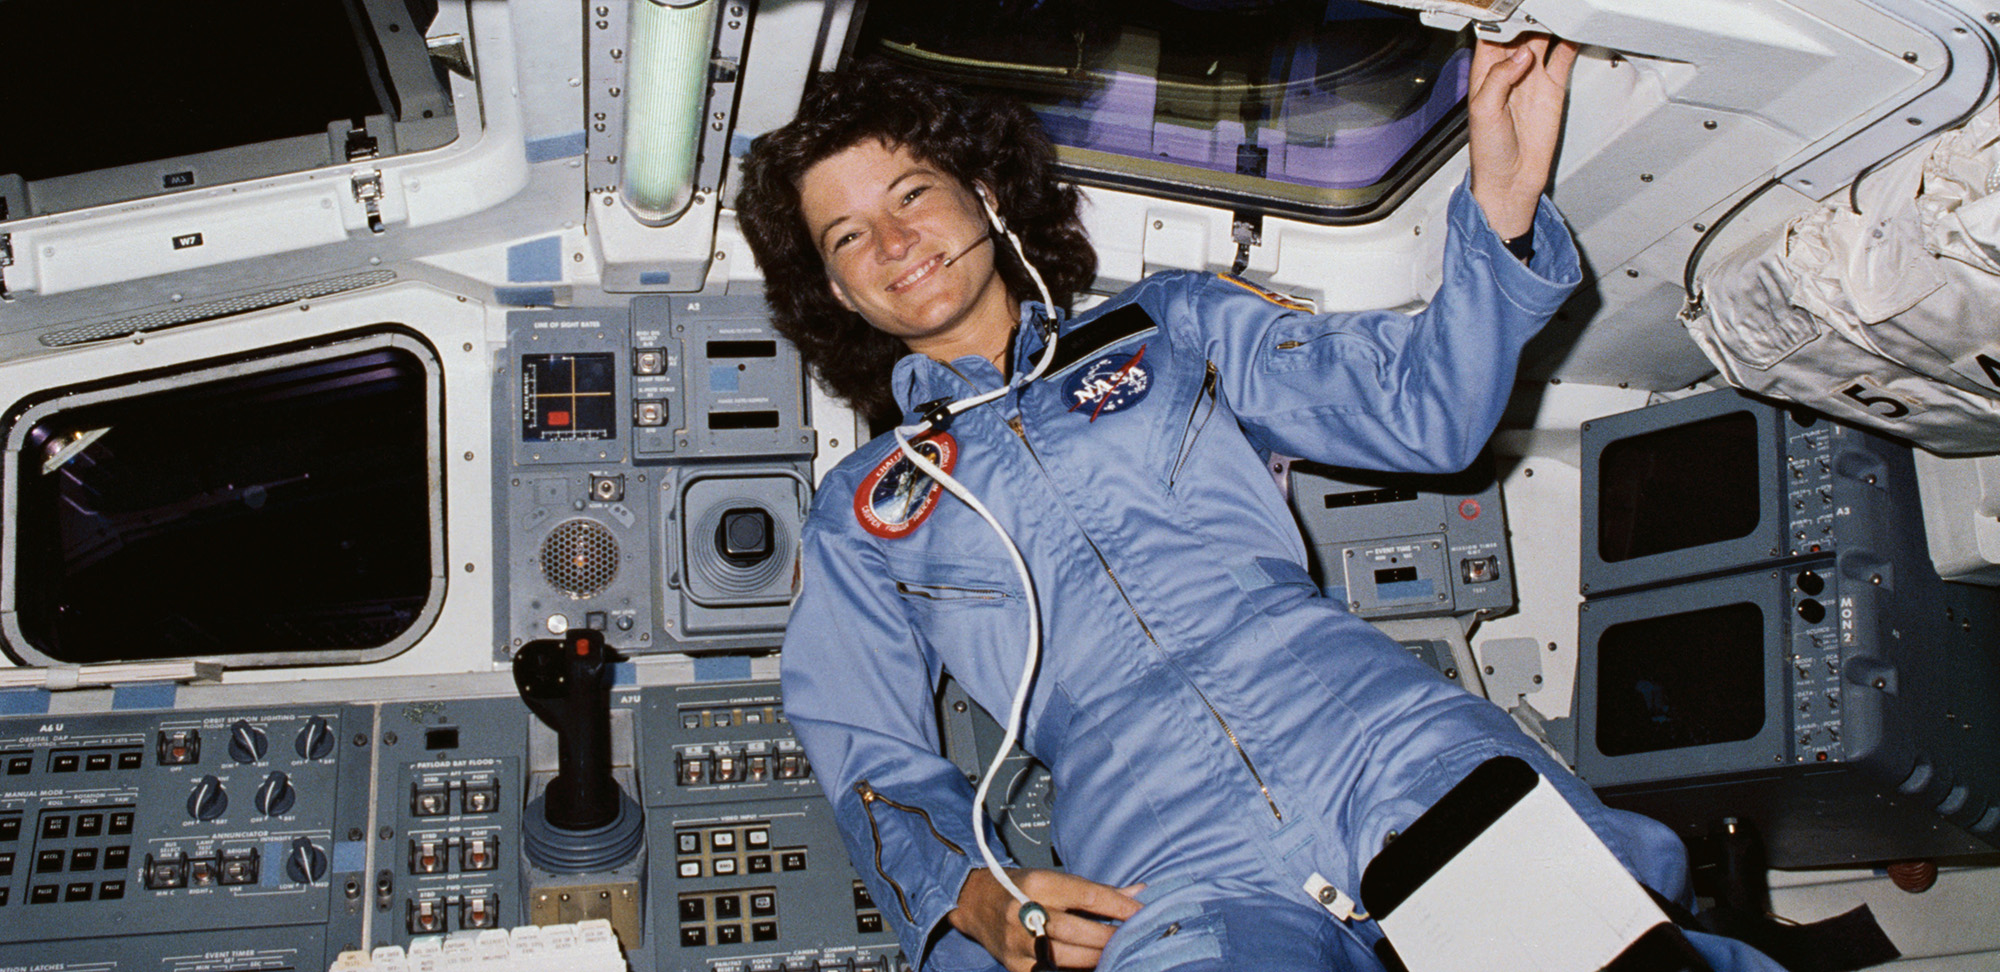 Sally Ride La Primera Astronauta De La Nasa La Misma Historia